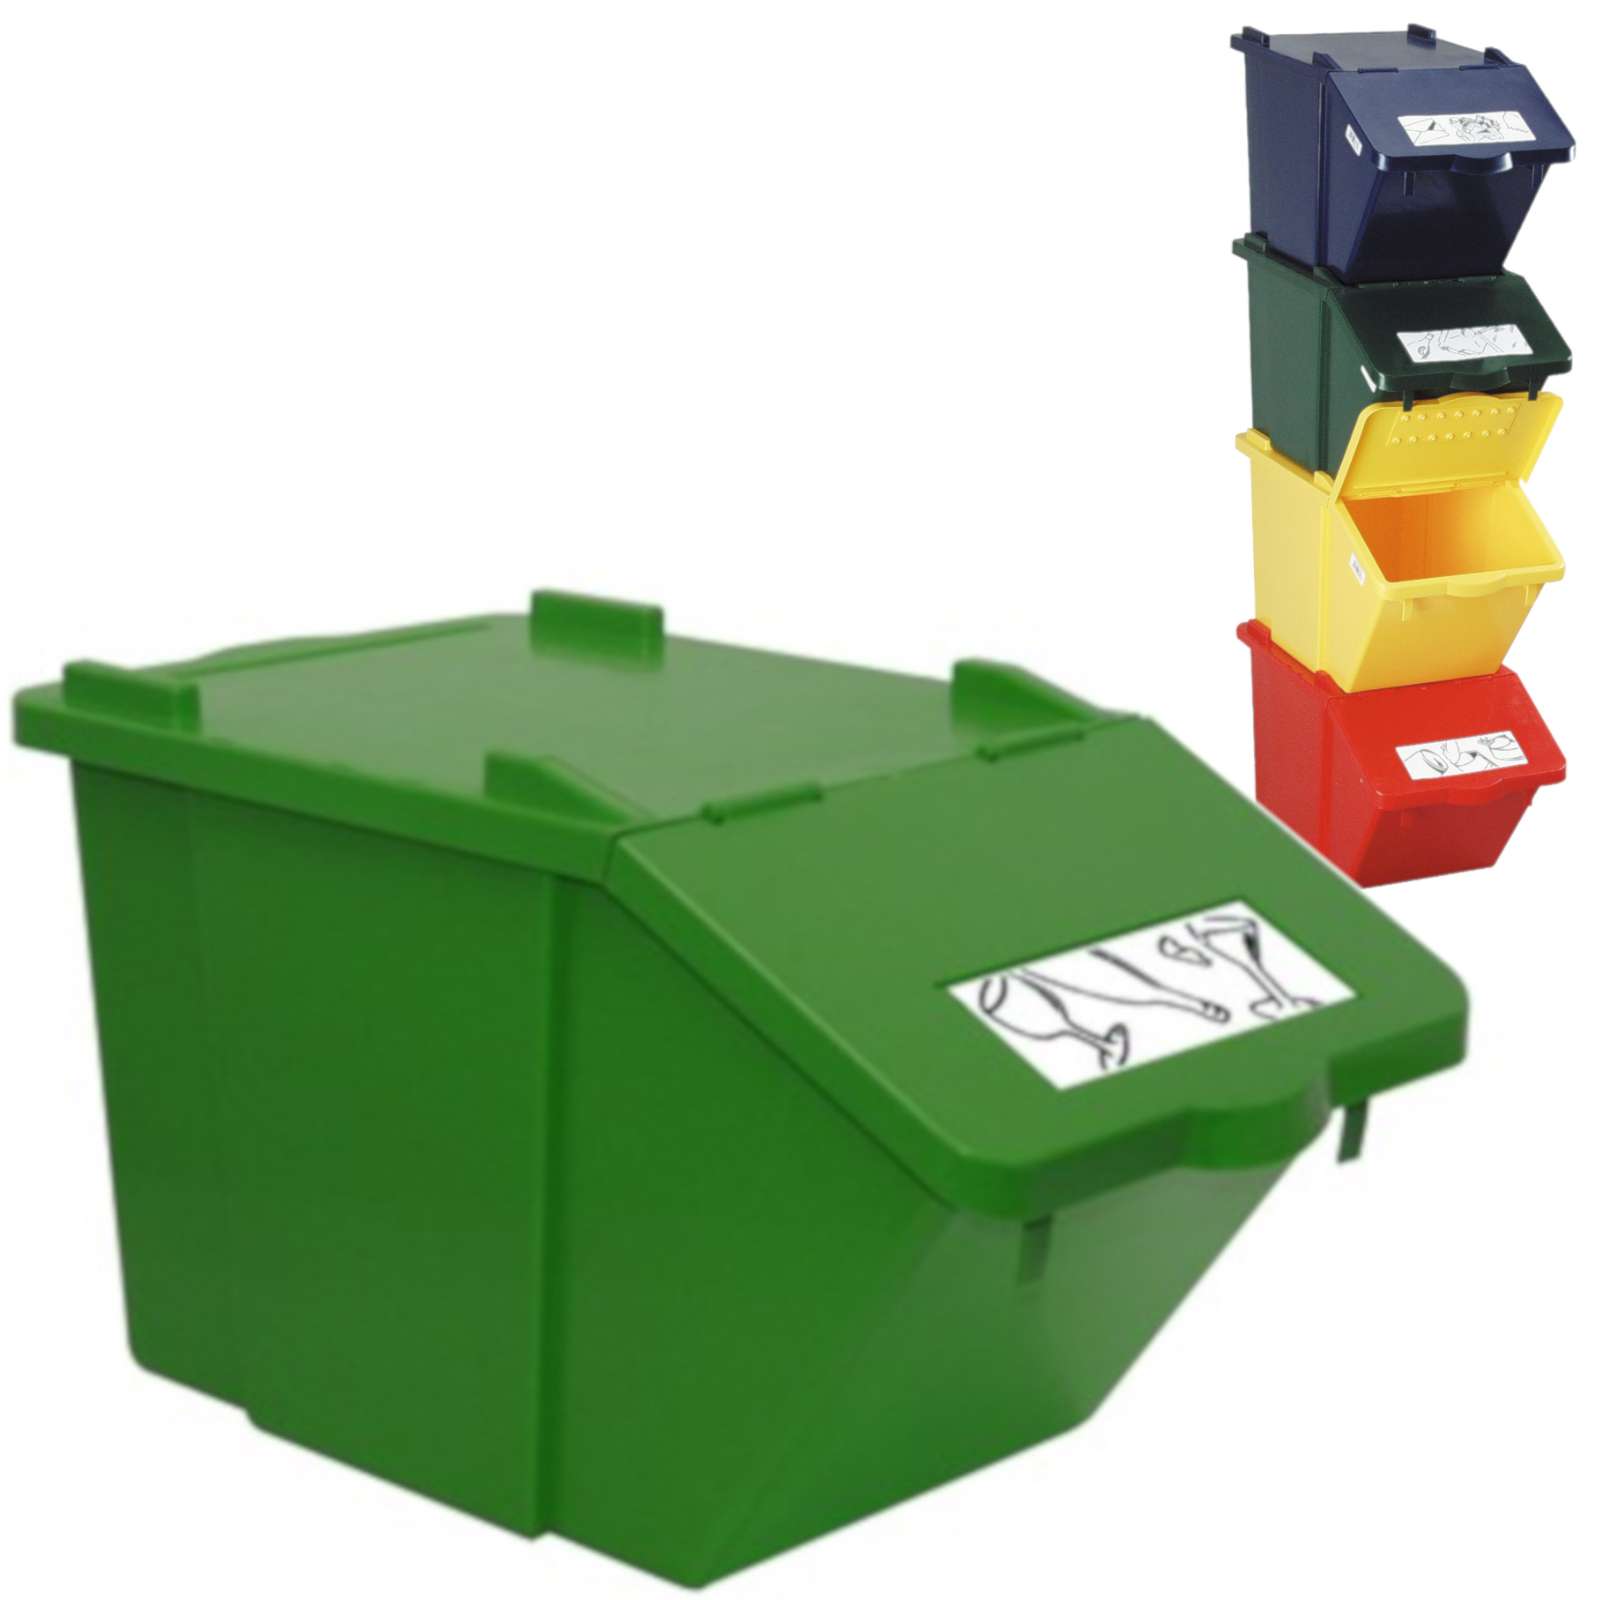 Pojemnik do sortowania odpadów piętrowy - zielony 45L - sklep.odpady.org